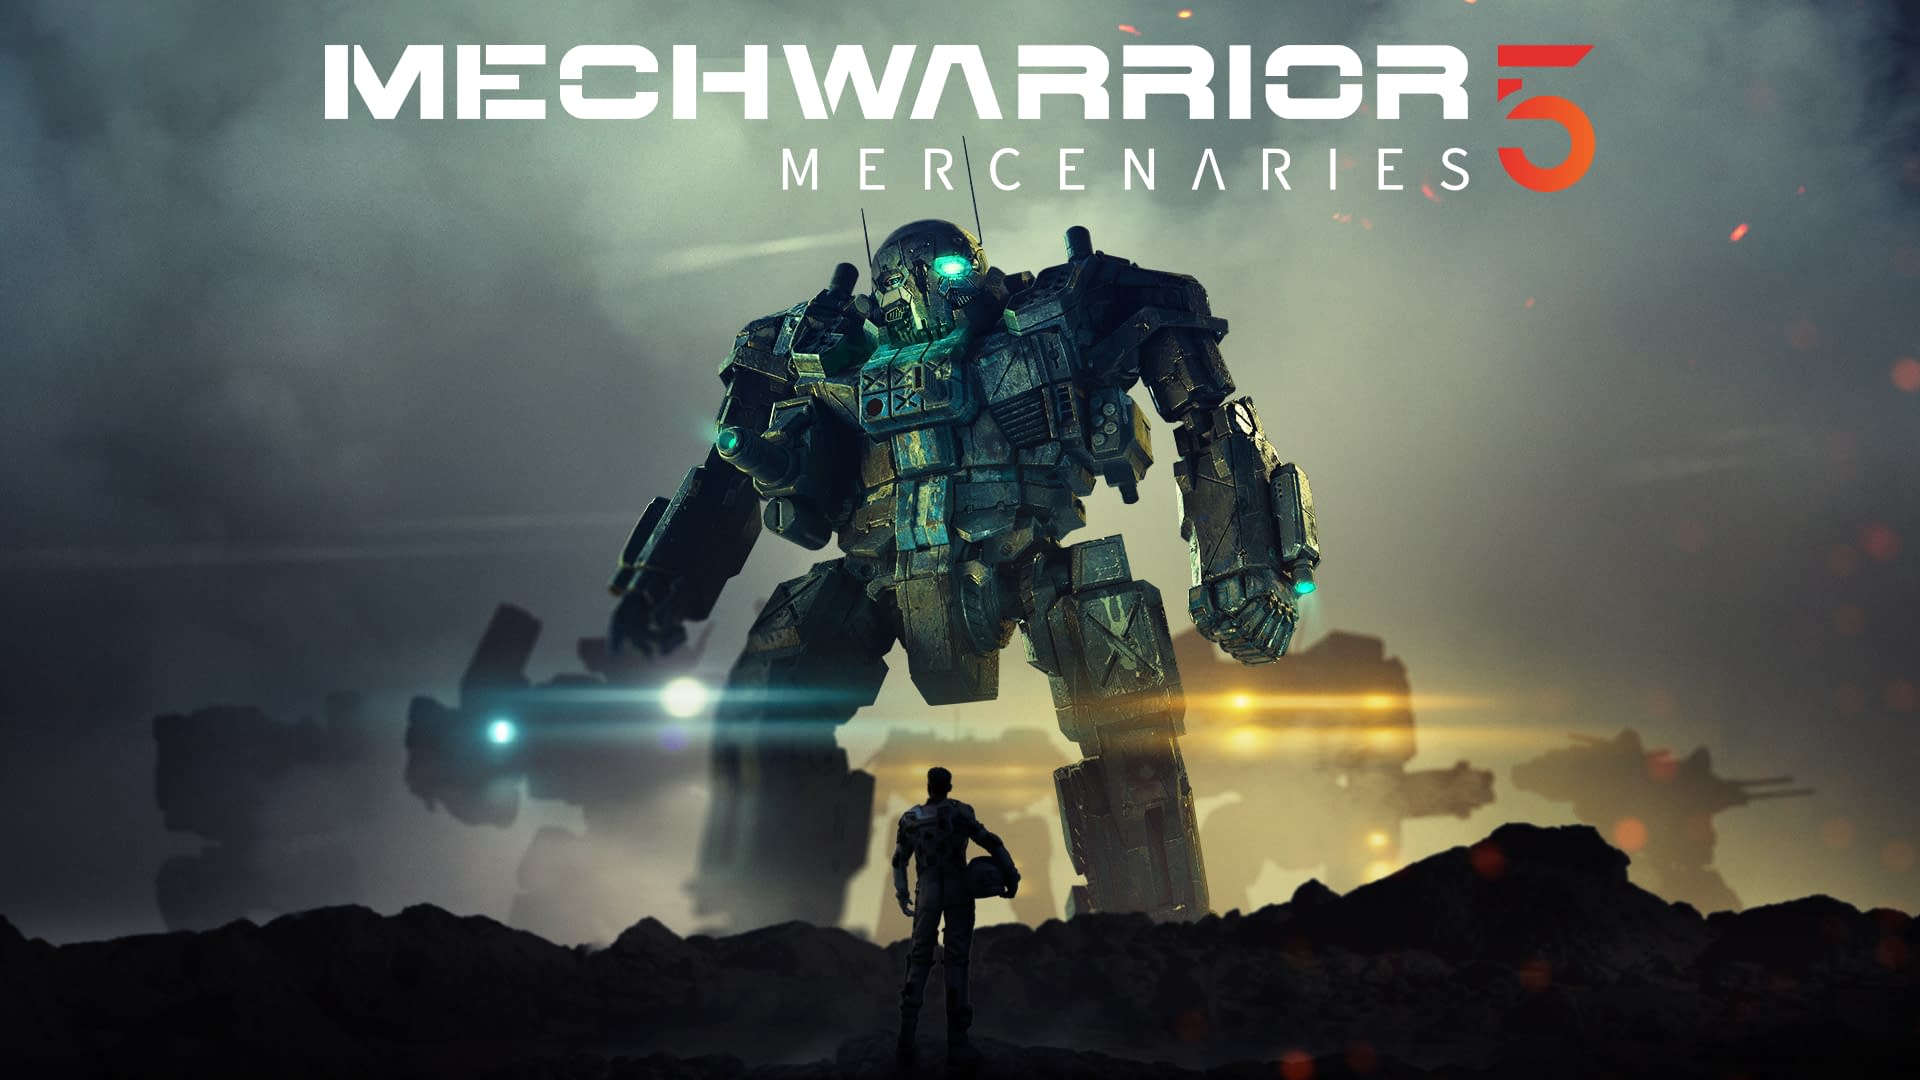 MechWarrior 5 Mercenaries Is Headed To The PlayStation